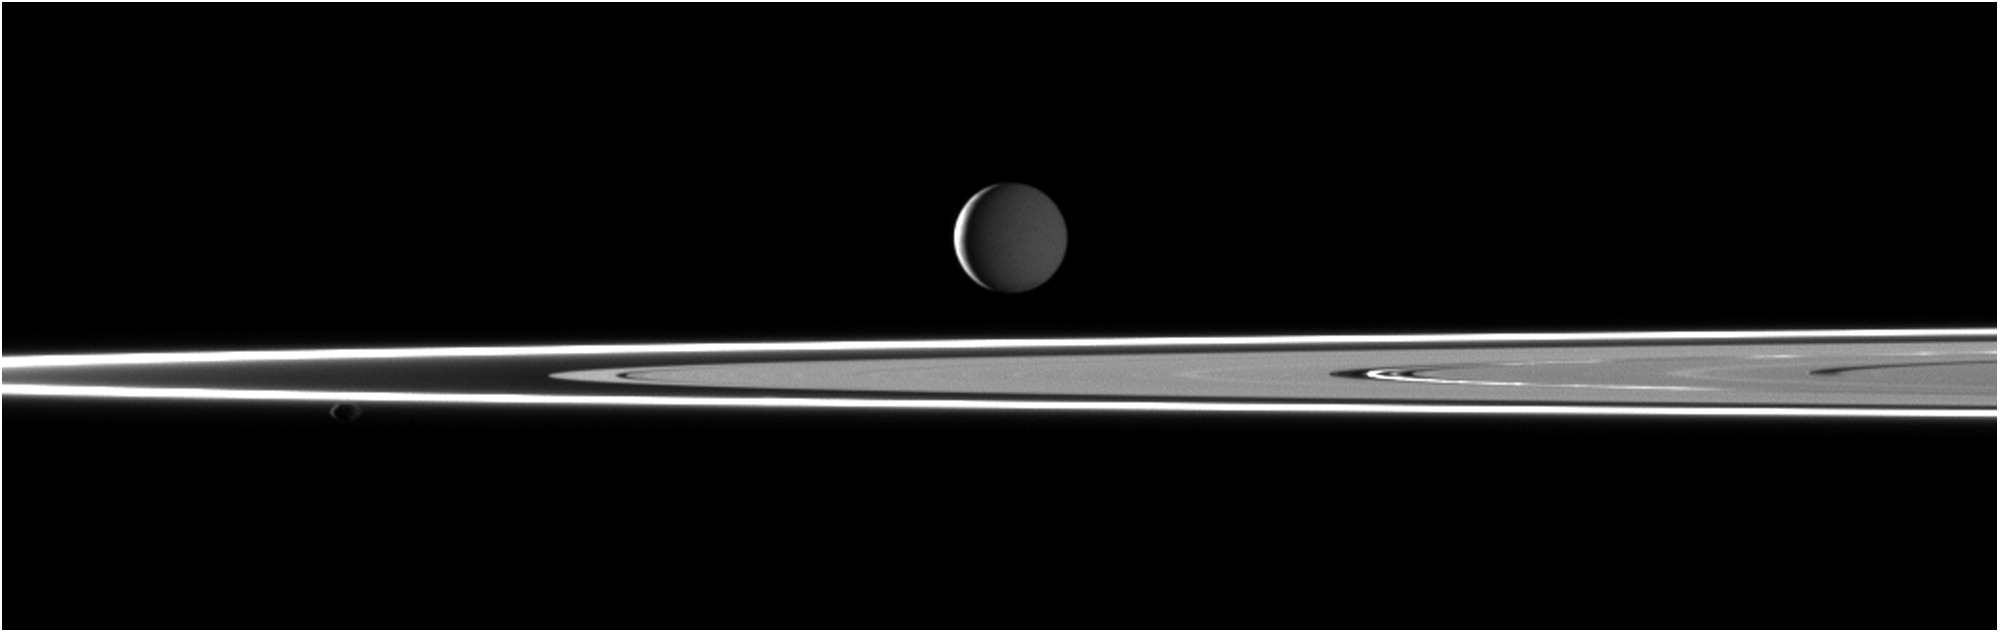 Enceldaus and Saturn's rings